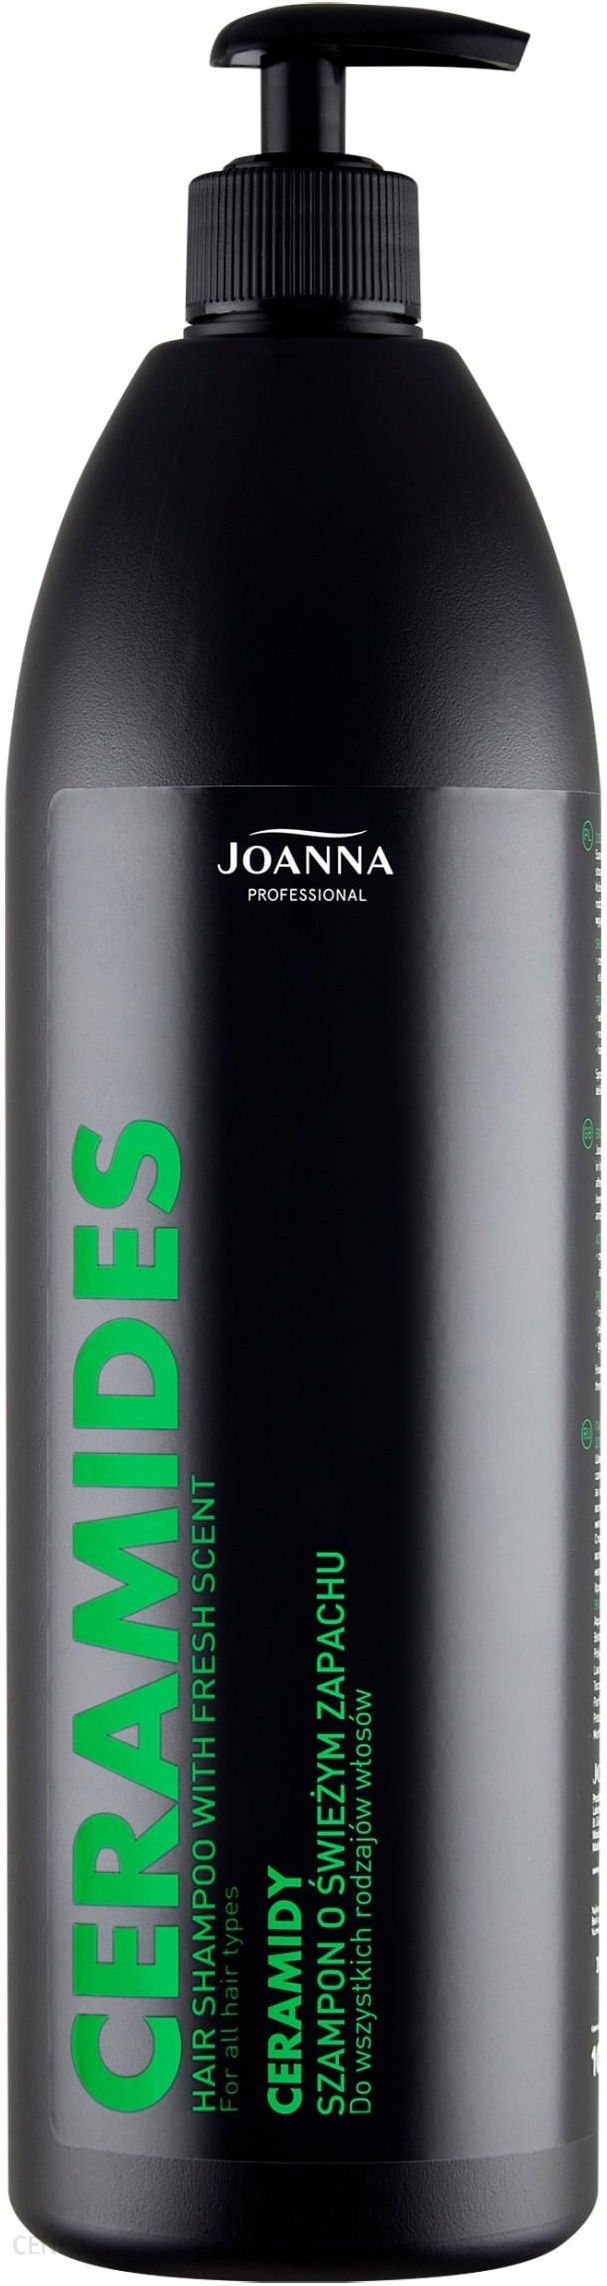 joanna szampon 1000ml z keratyną apteka